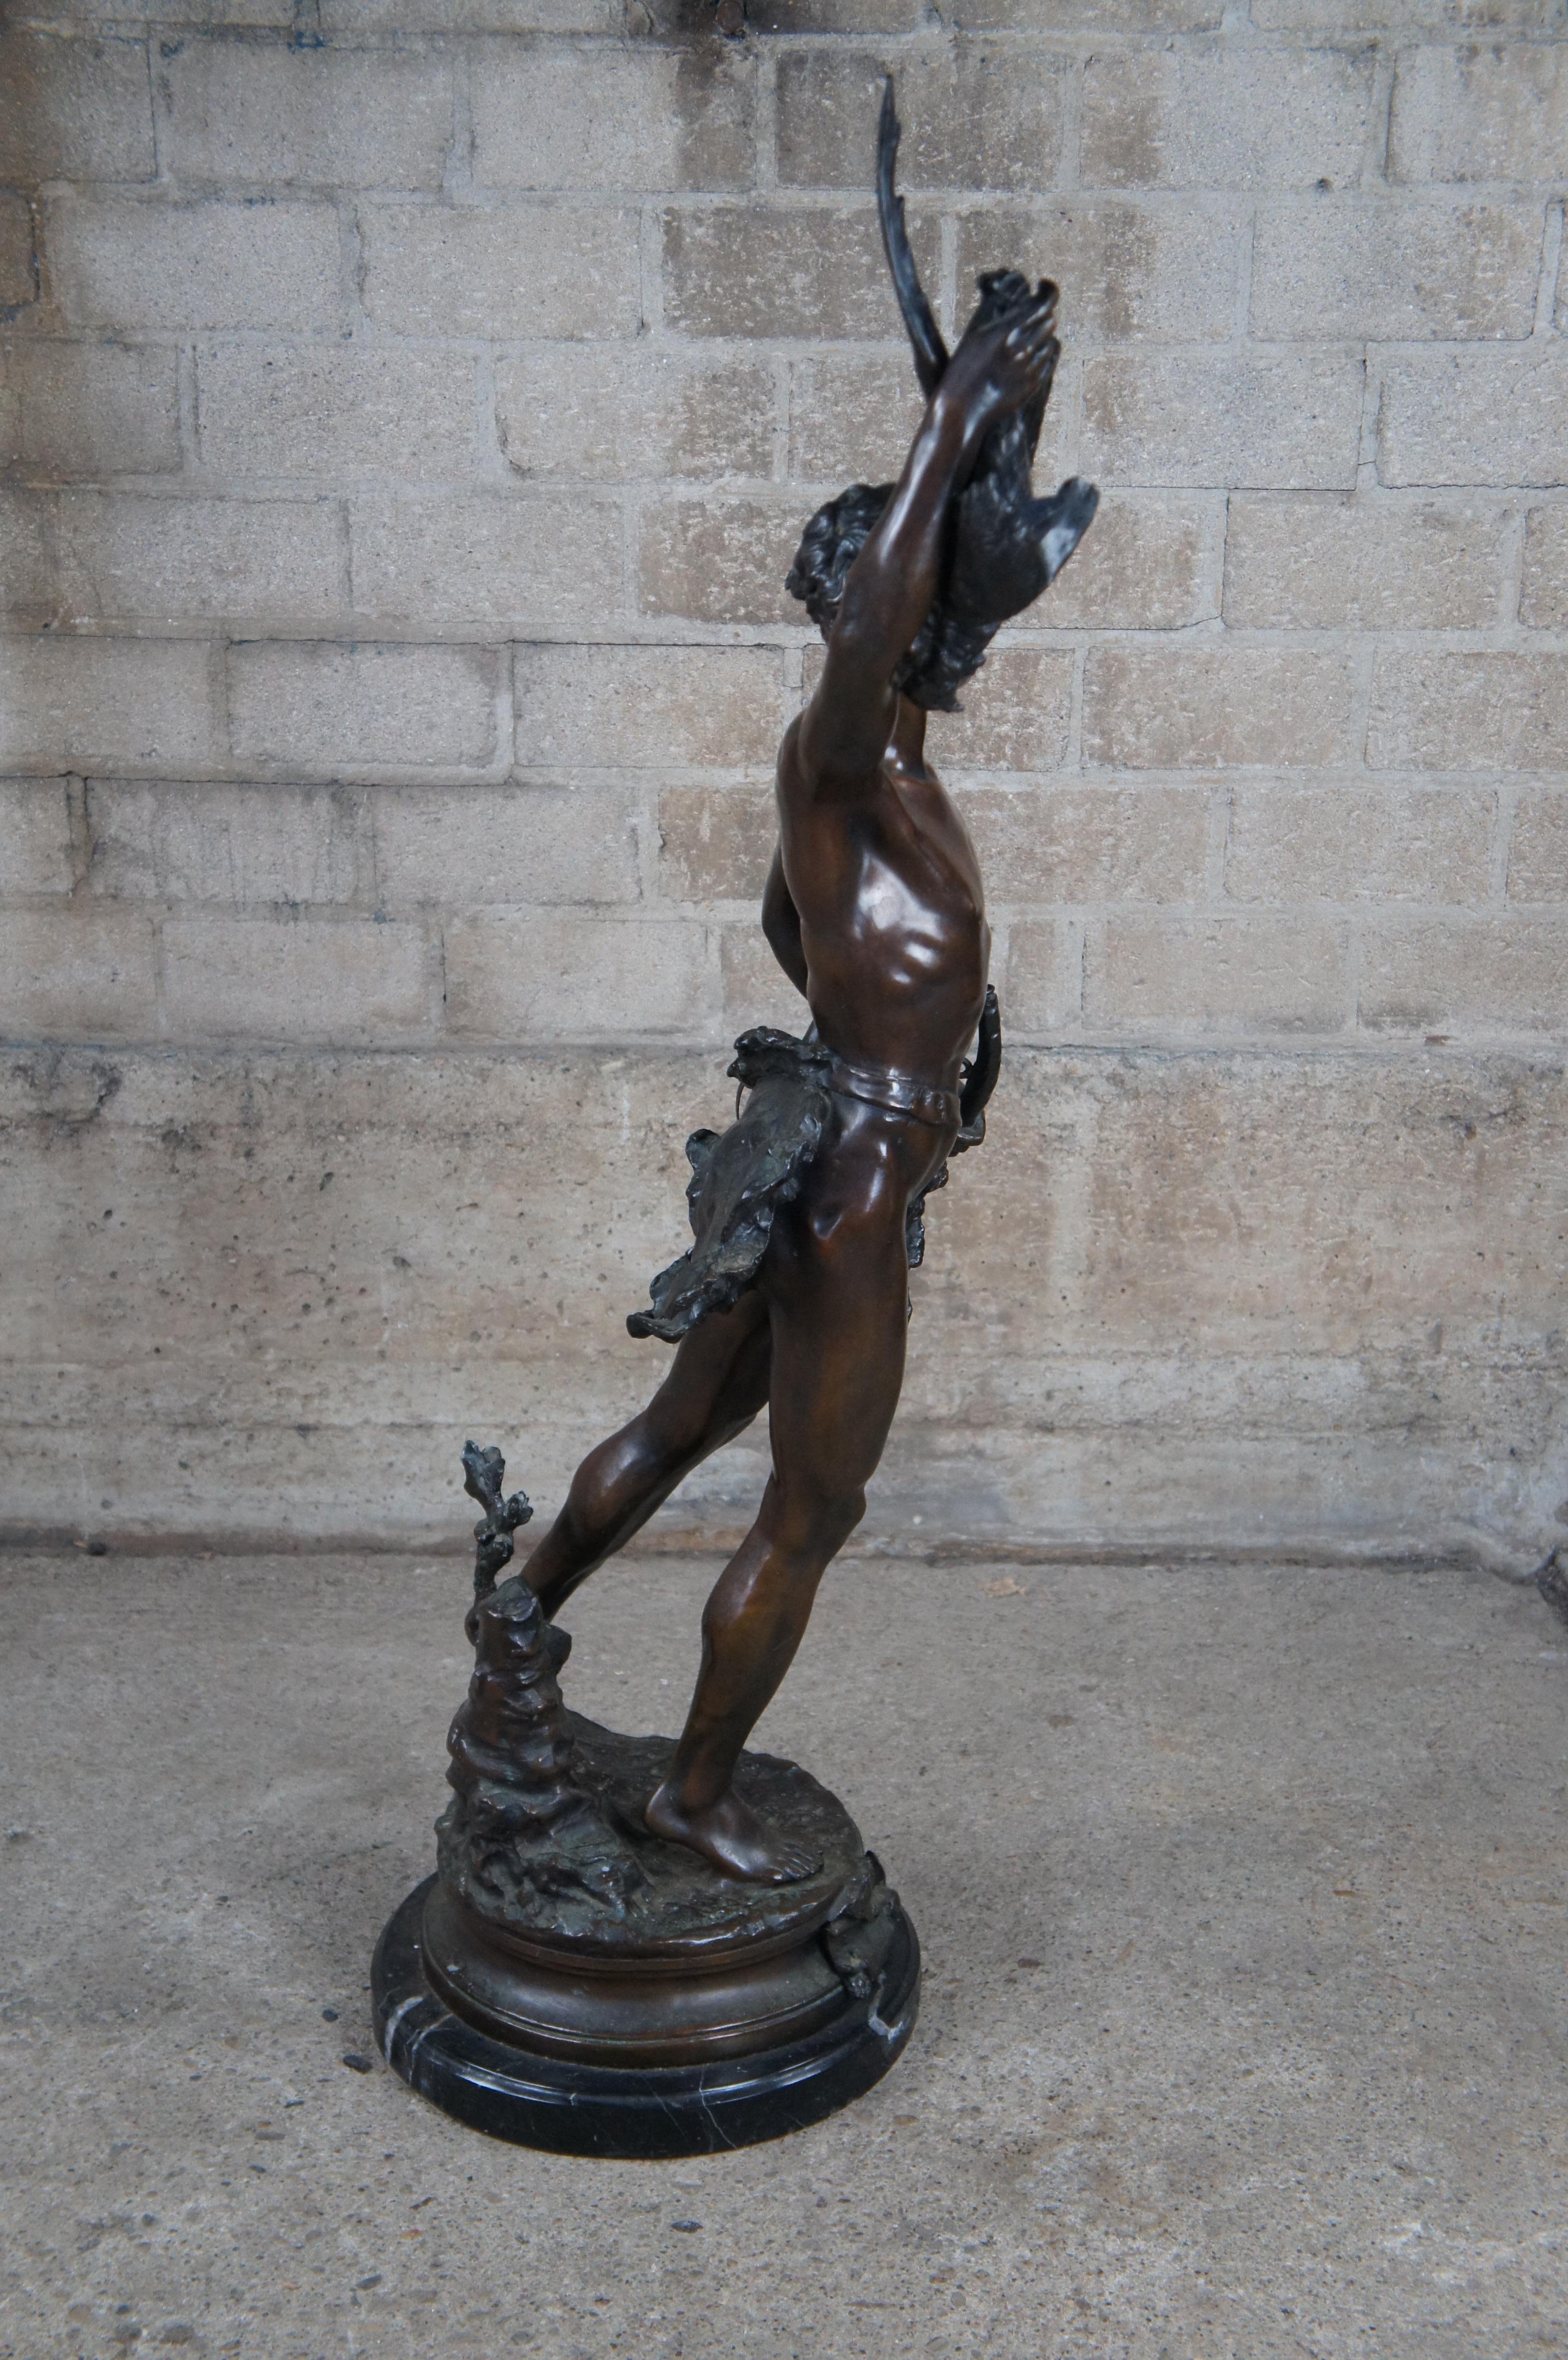 Französische Bronzeskulptur „ Acteon Greek Hunter“ von Adrien Etienne Gaudez, griechischer Jäger, 46